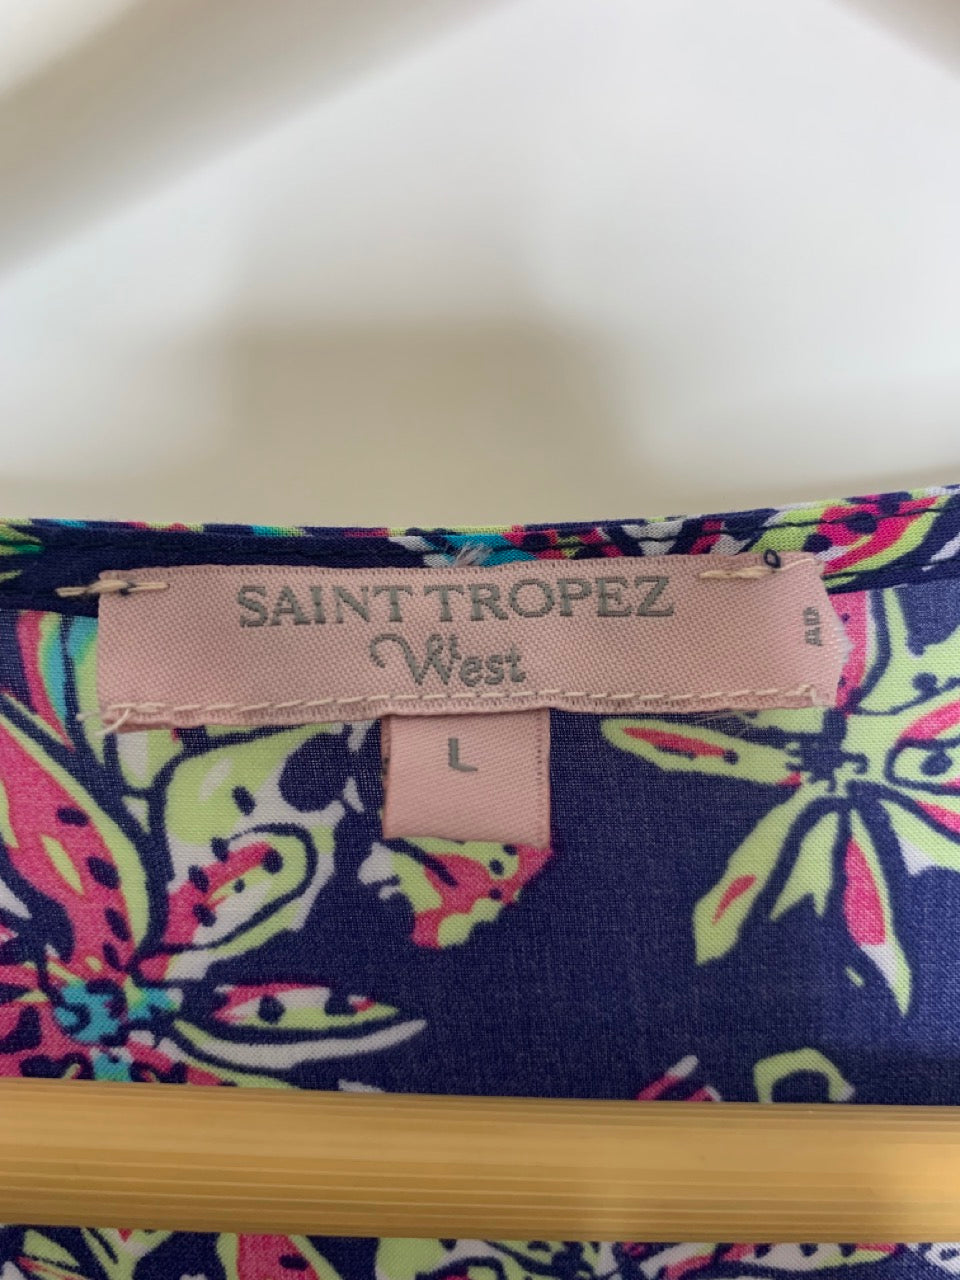 Saint Tropez West Knot Front Floral Top